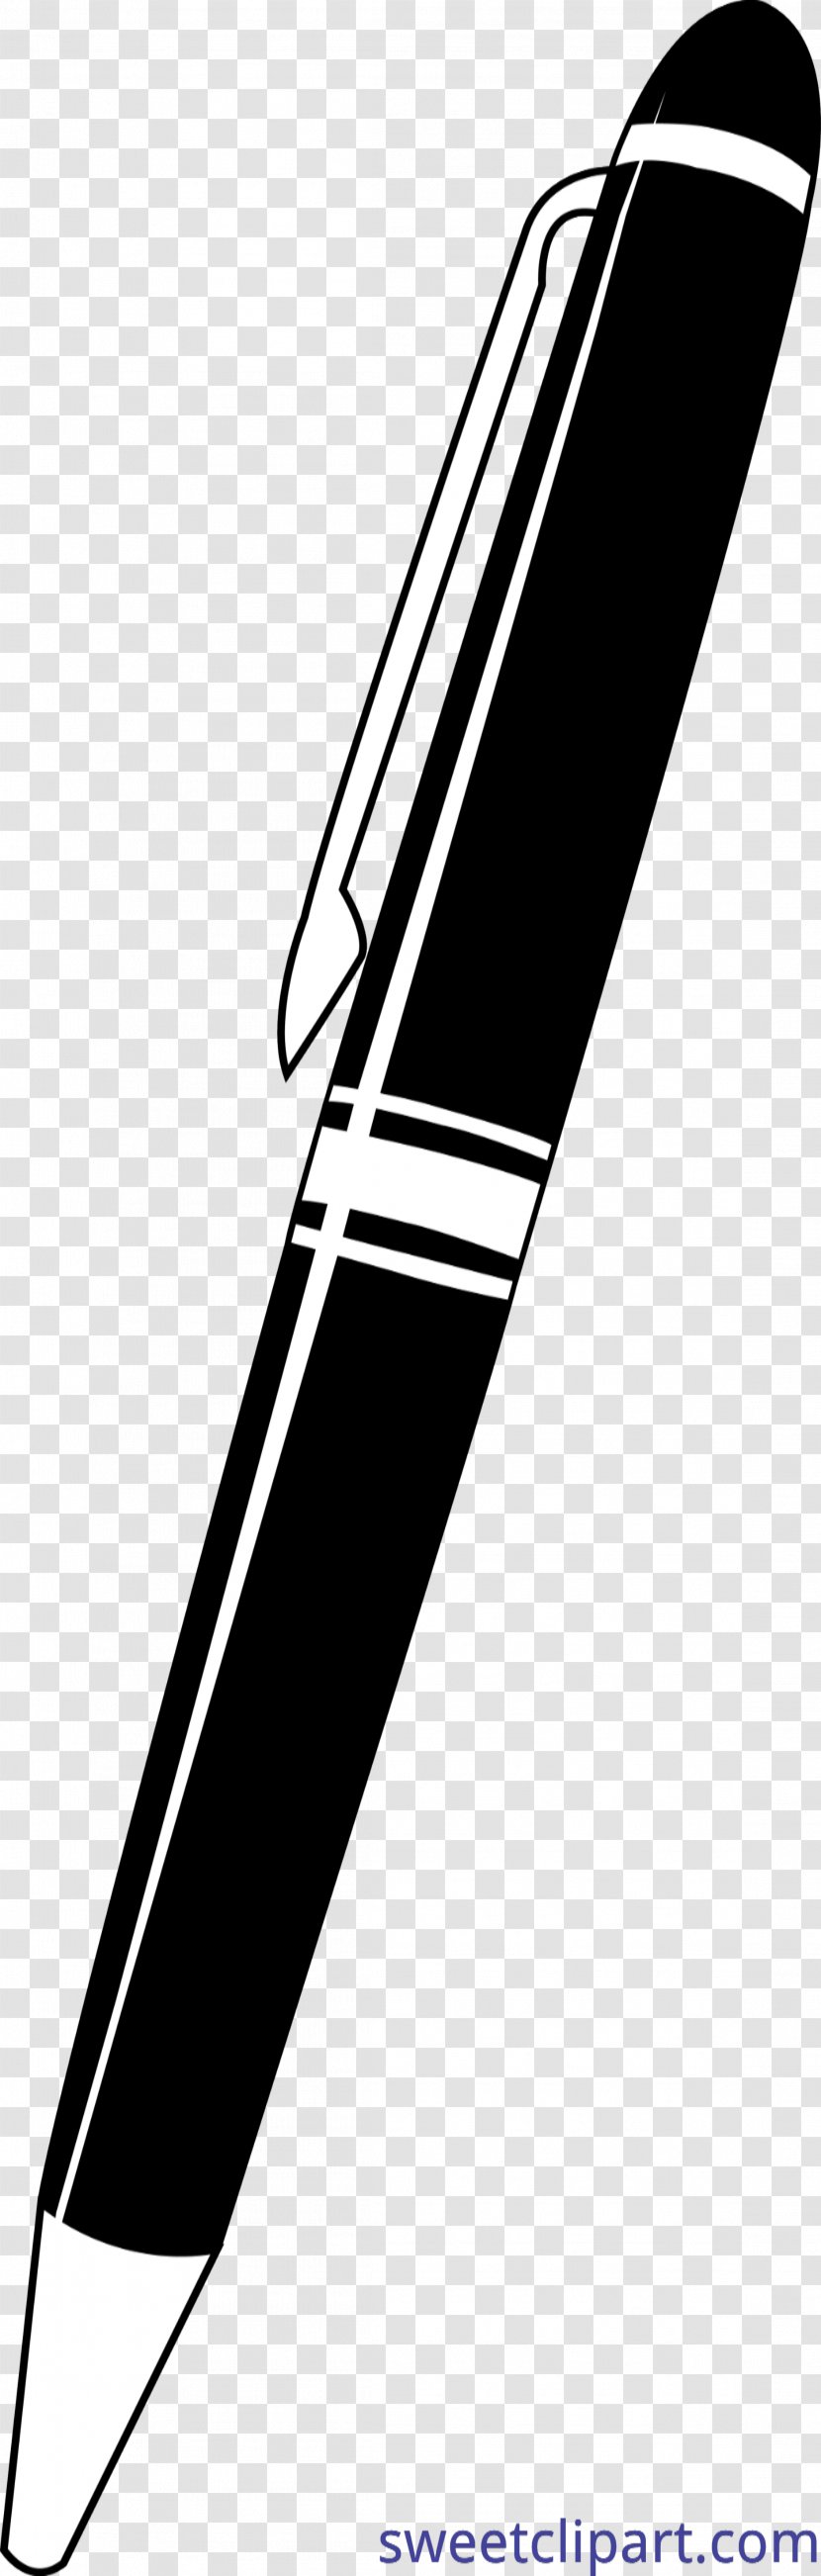 Clip Art Pens Ballpoint Pen Pencil Image - Black And White Transparent PNG